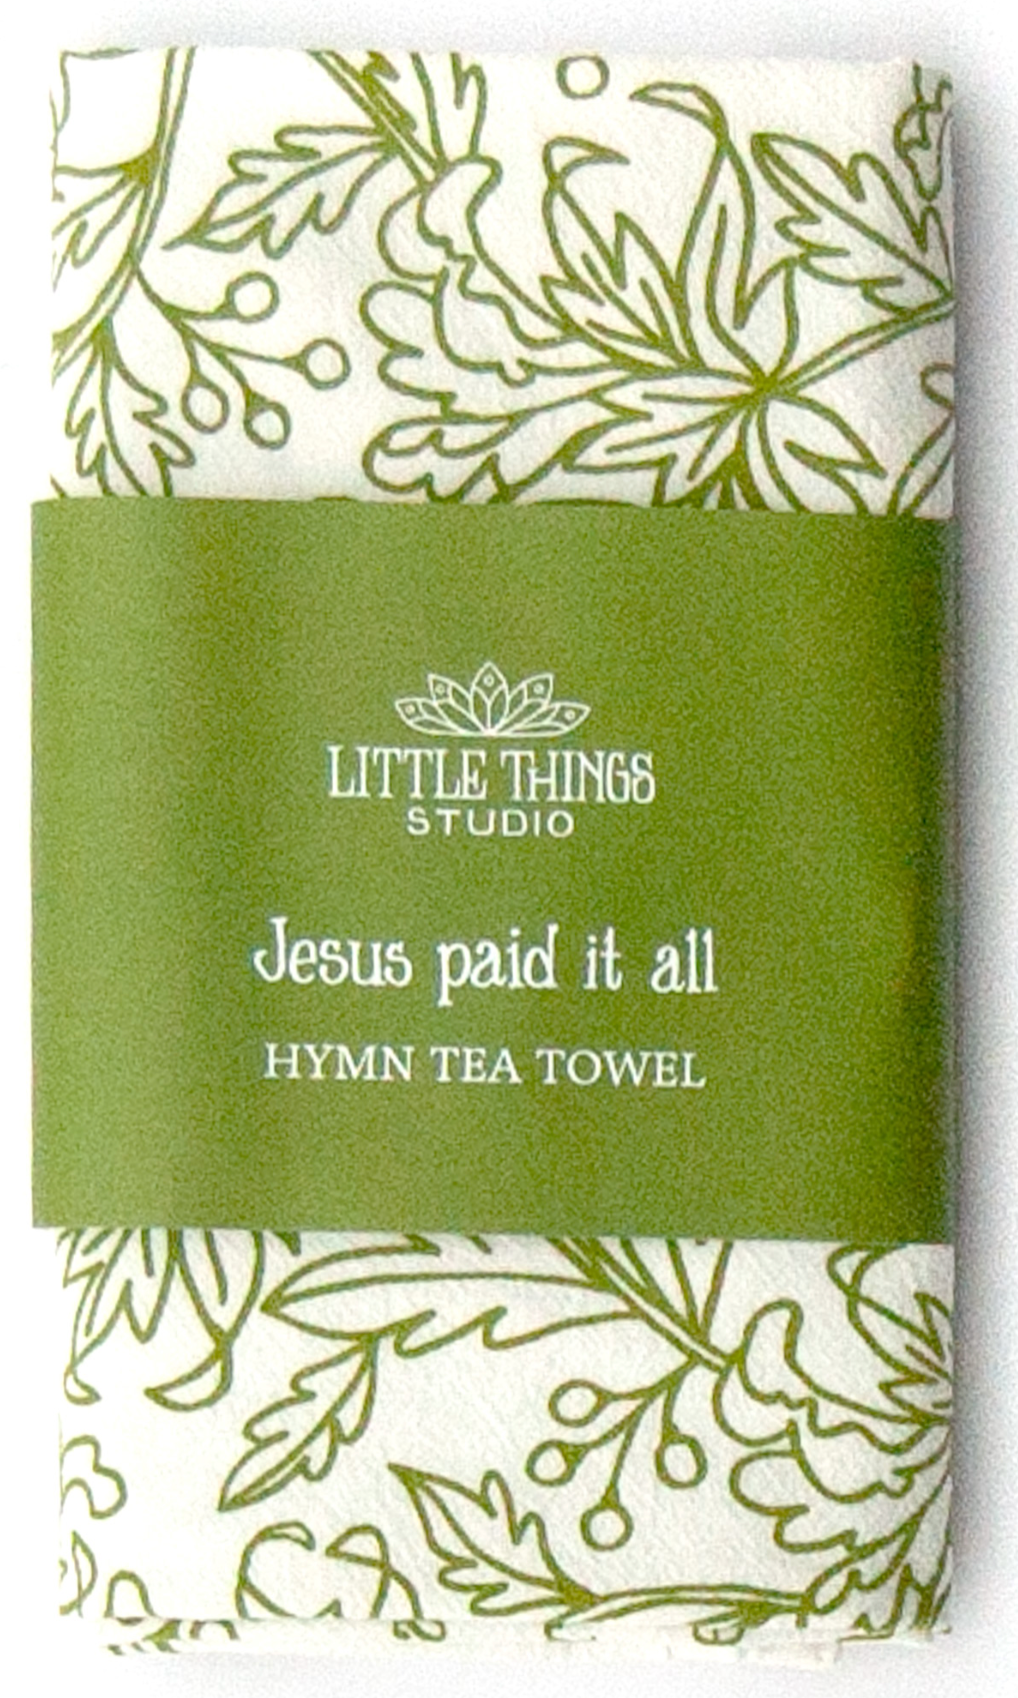 Jesus Paid It All Hymn Tea Towel